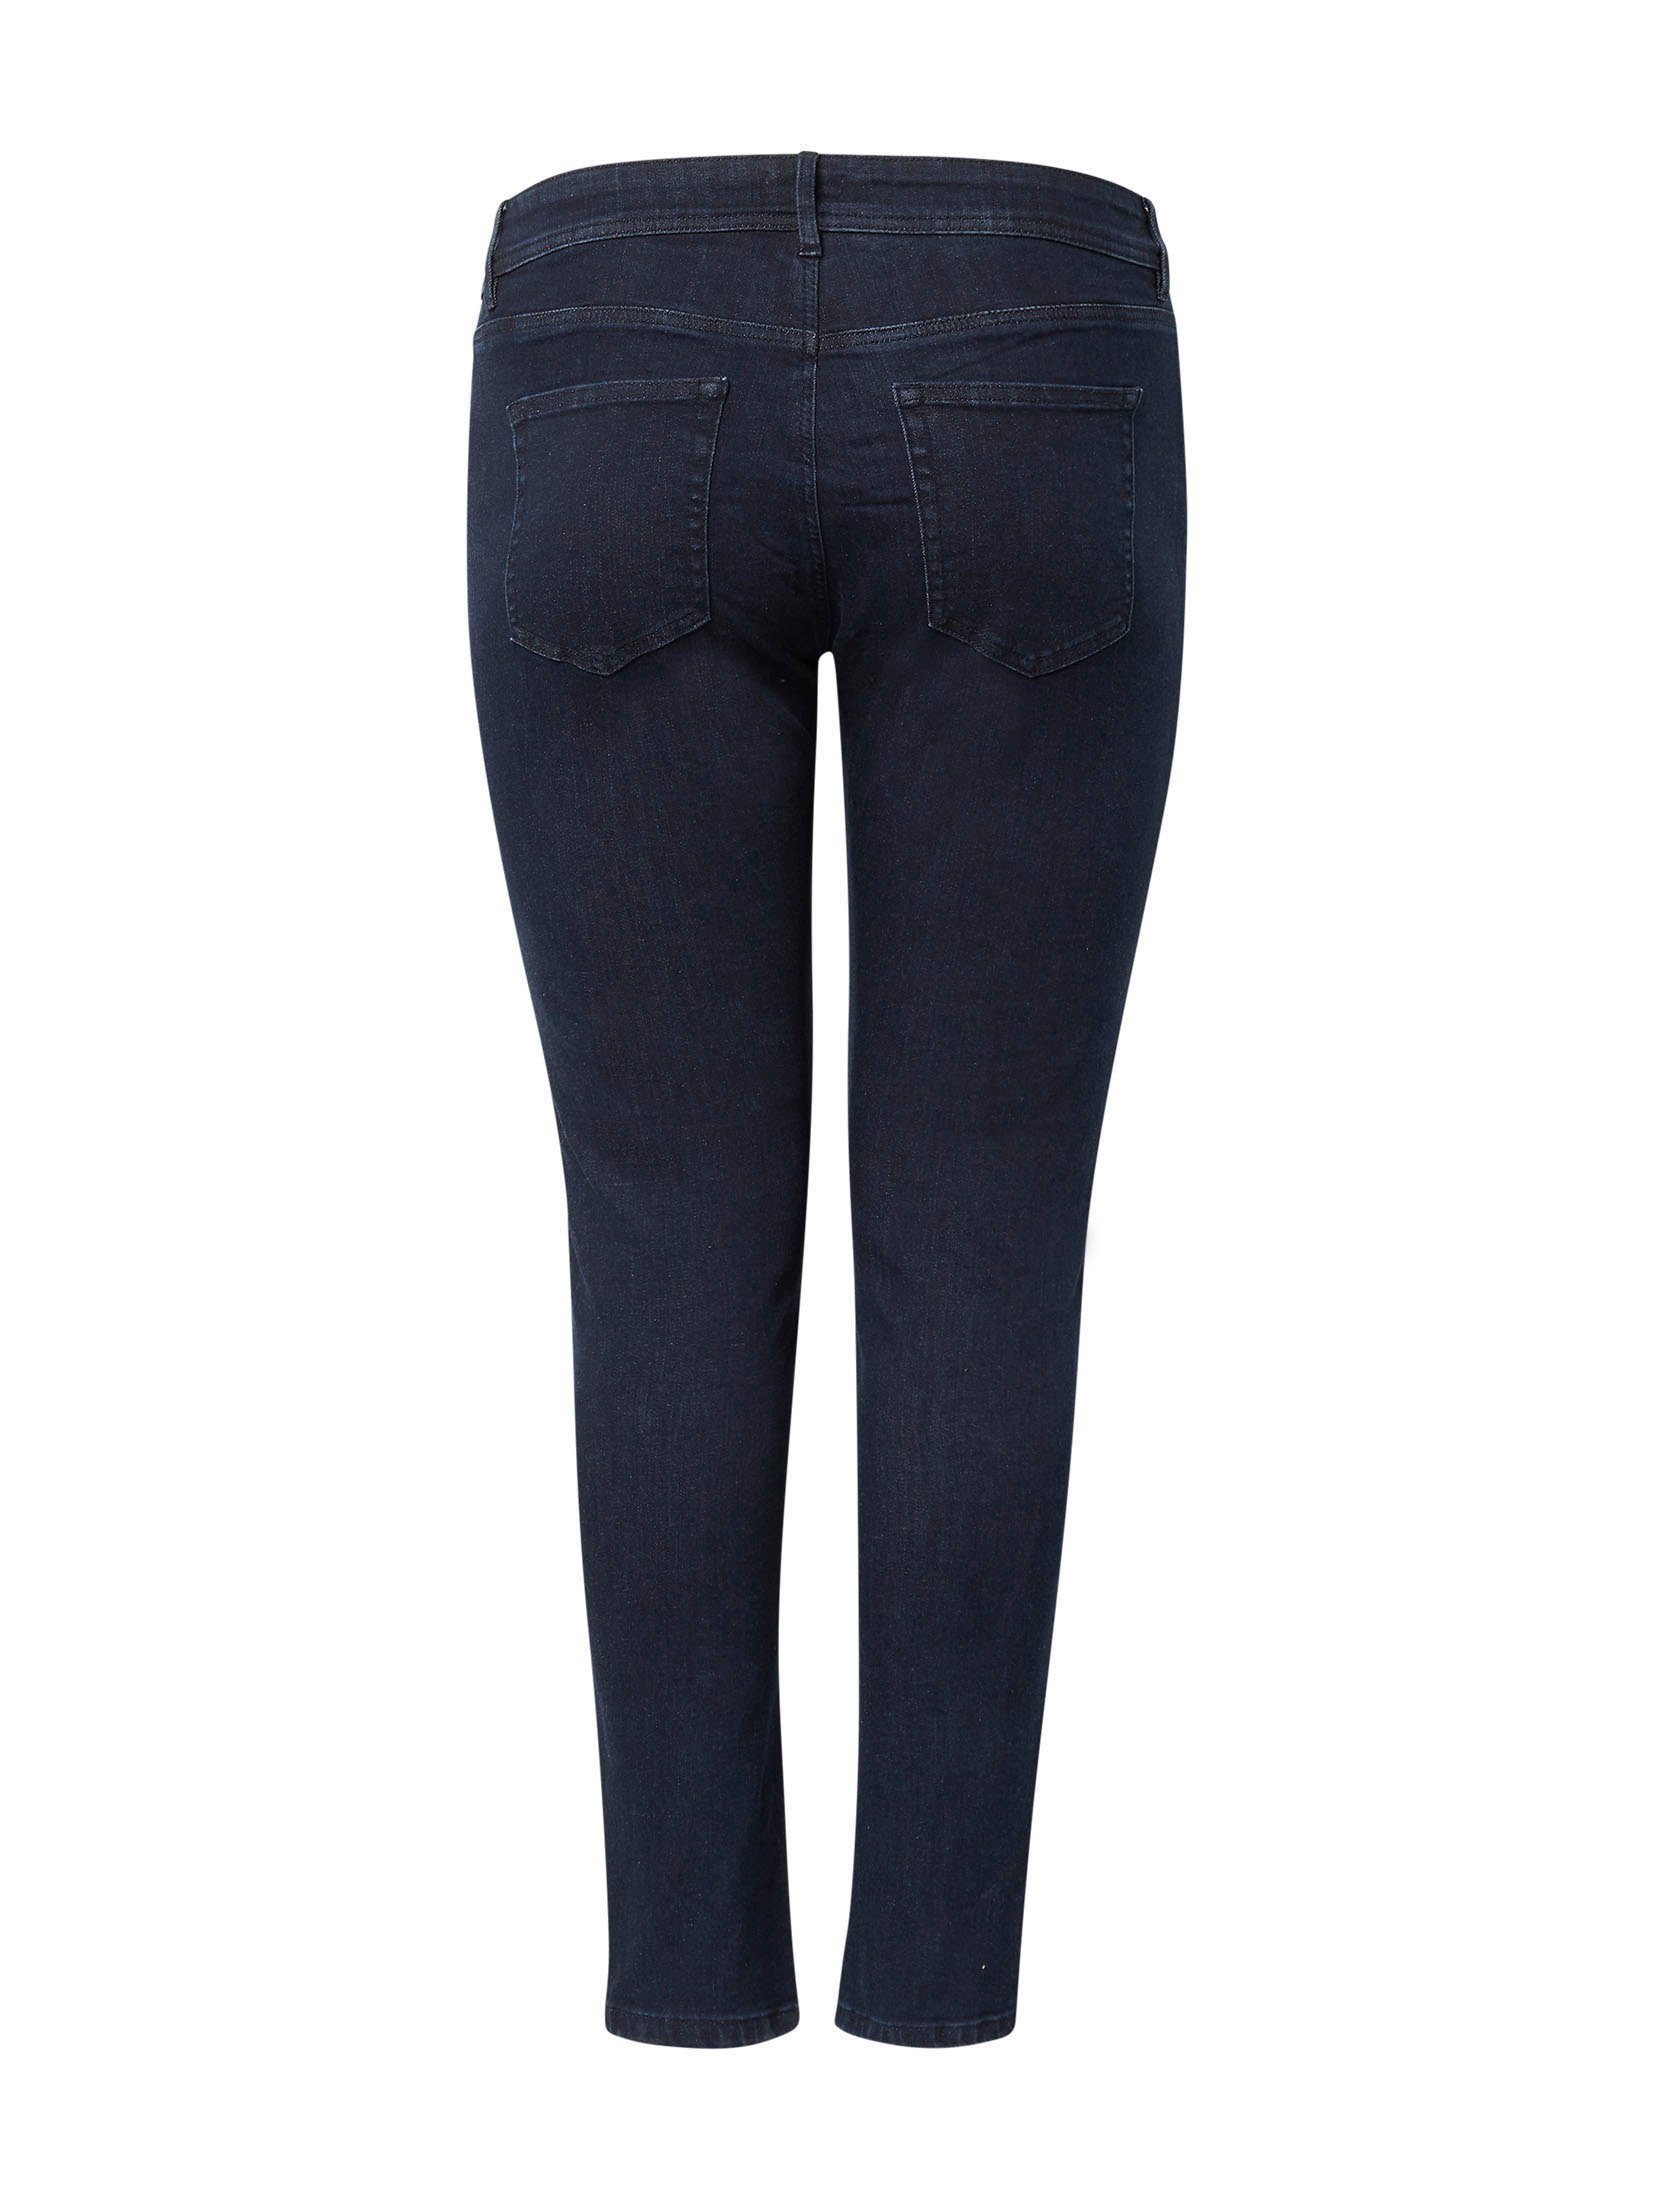 TAILOR darkblue-denim Pocket- TOM 5- in klassischer Form PLUS Skinny-fit-Jeans